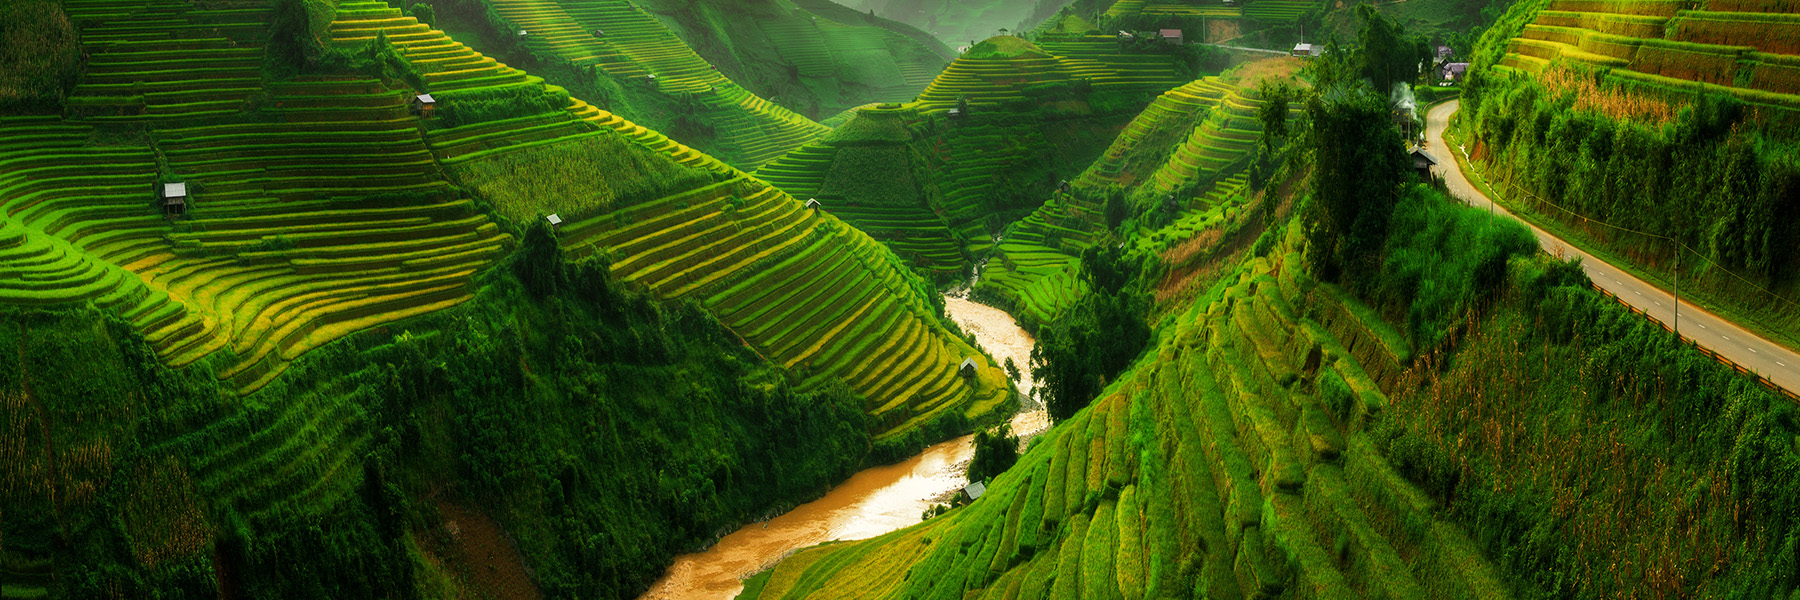 a terraced rice field landscape near Sapa in Vietnam